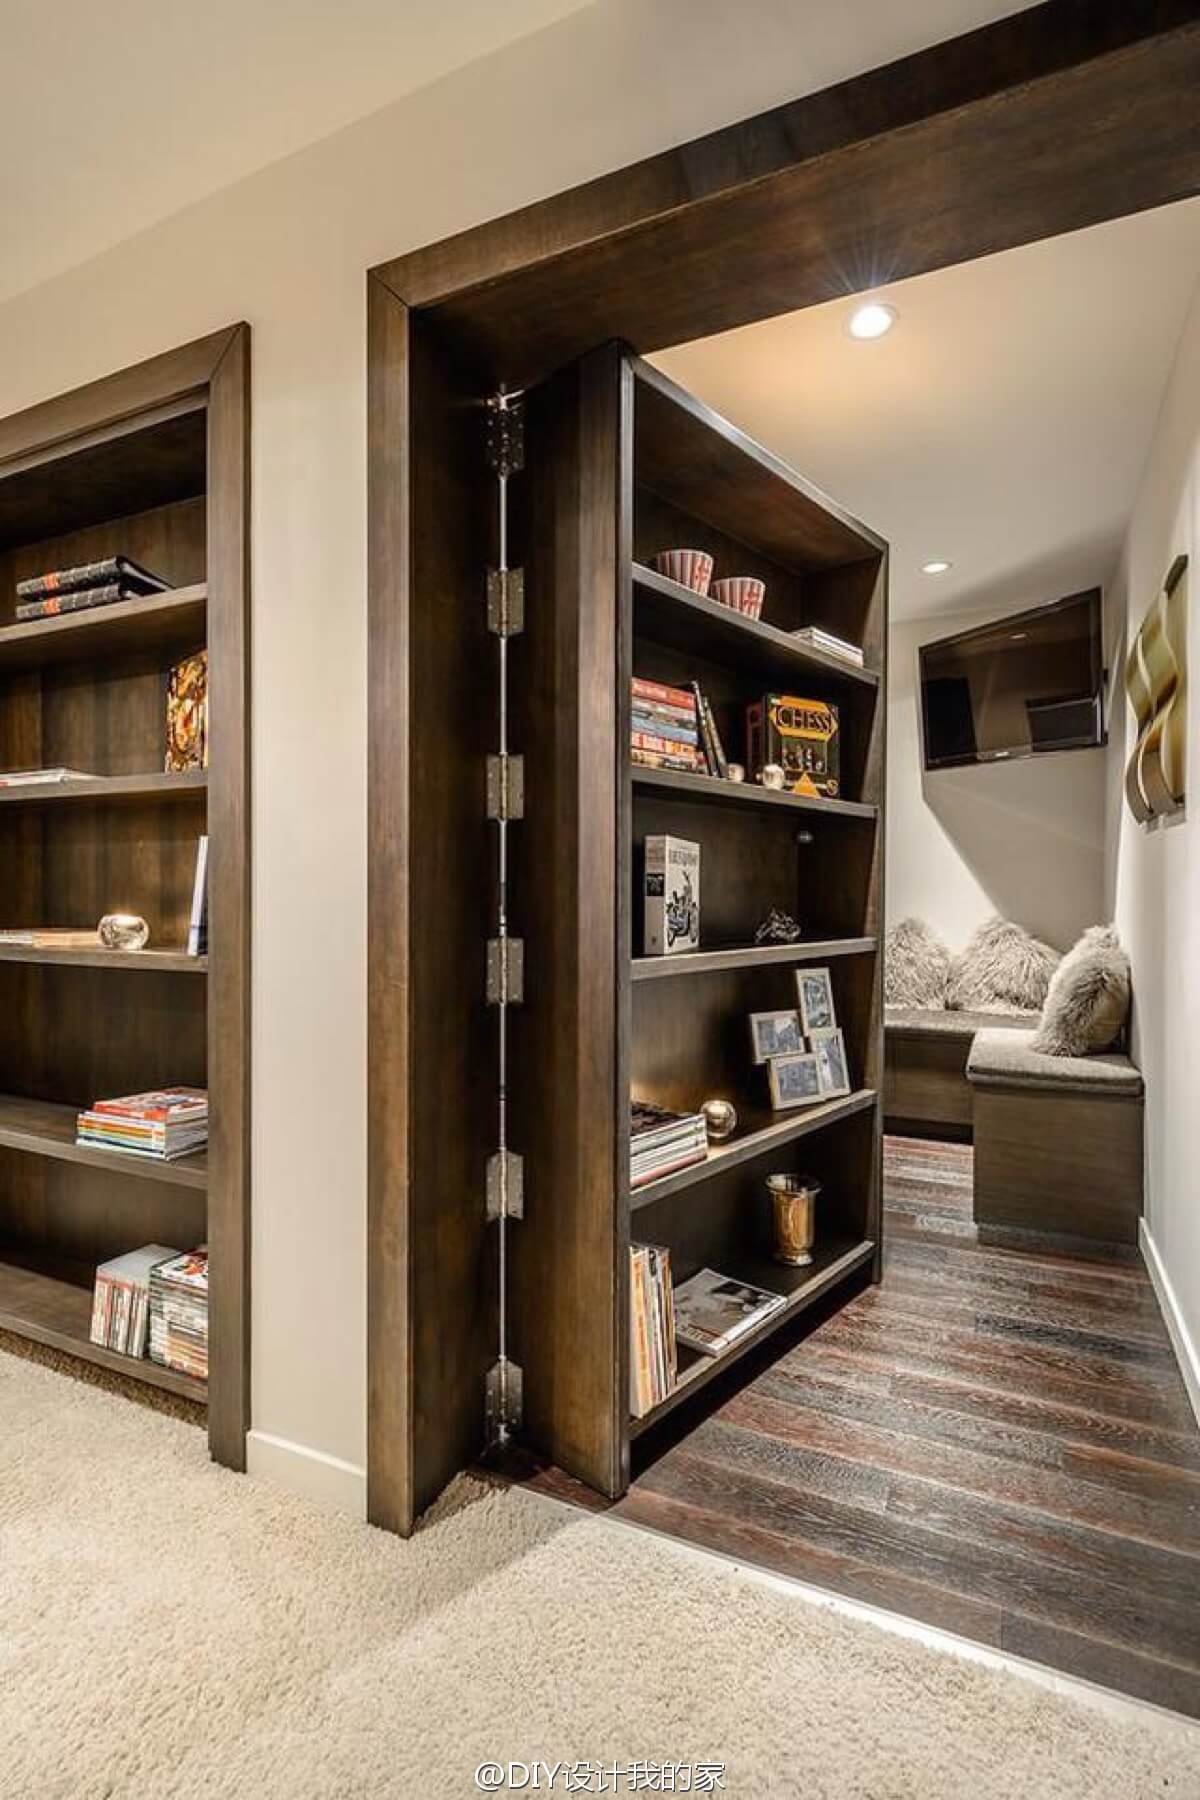 Secret Bookcase Doorway for Hidden Room